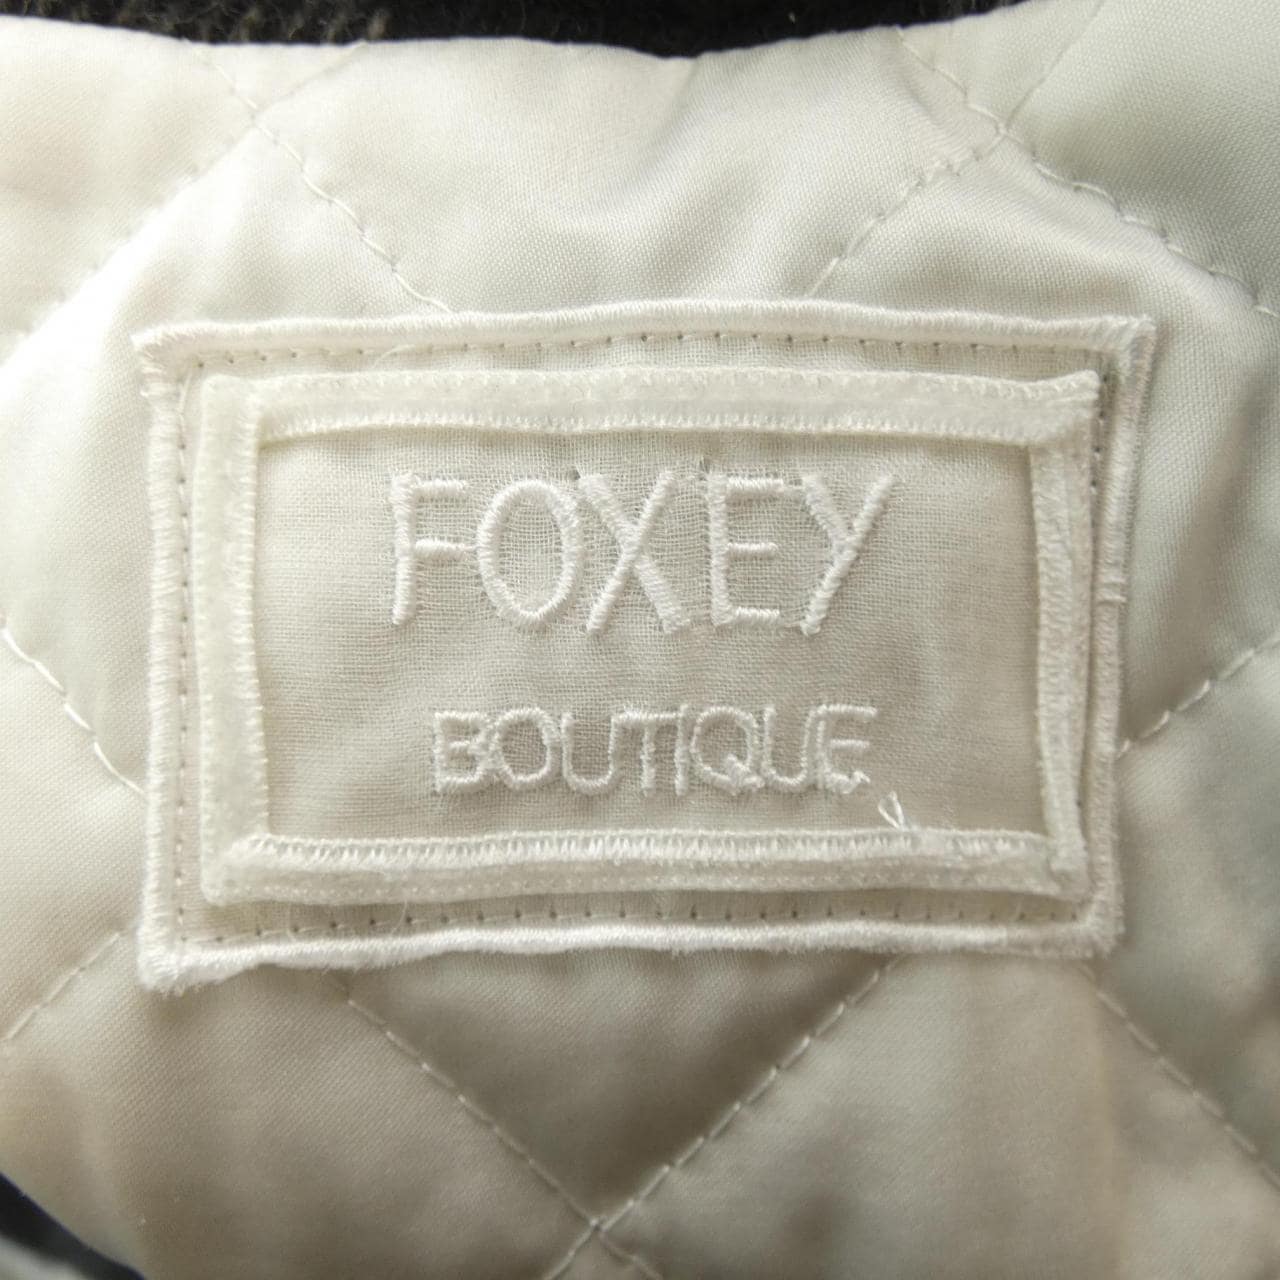 FOXEY BOUTIQUE coat